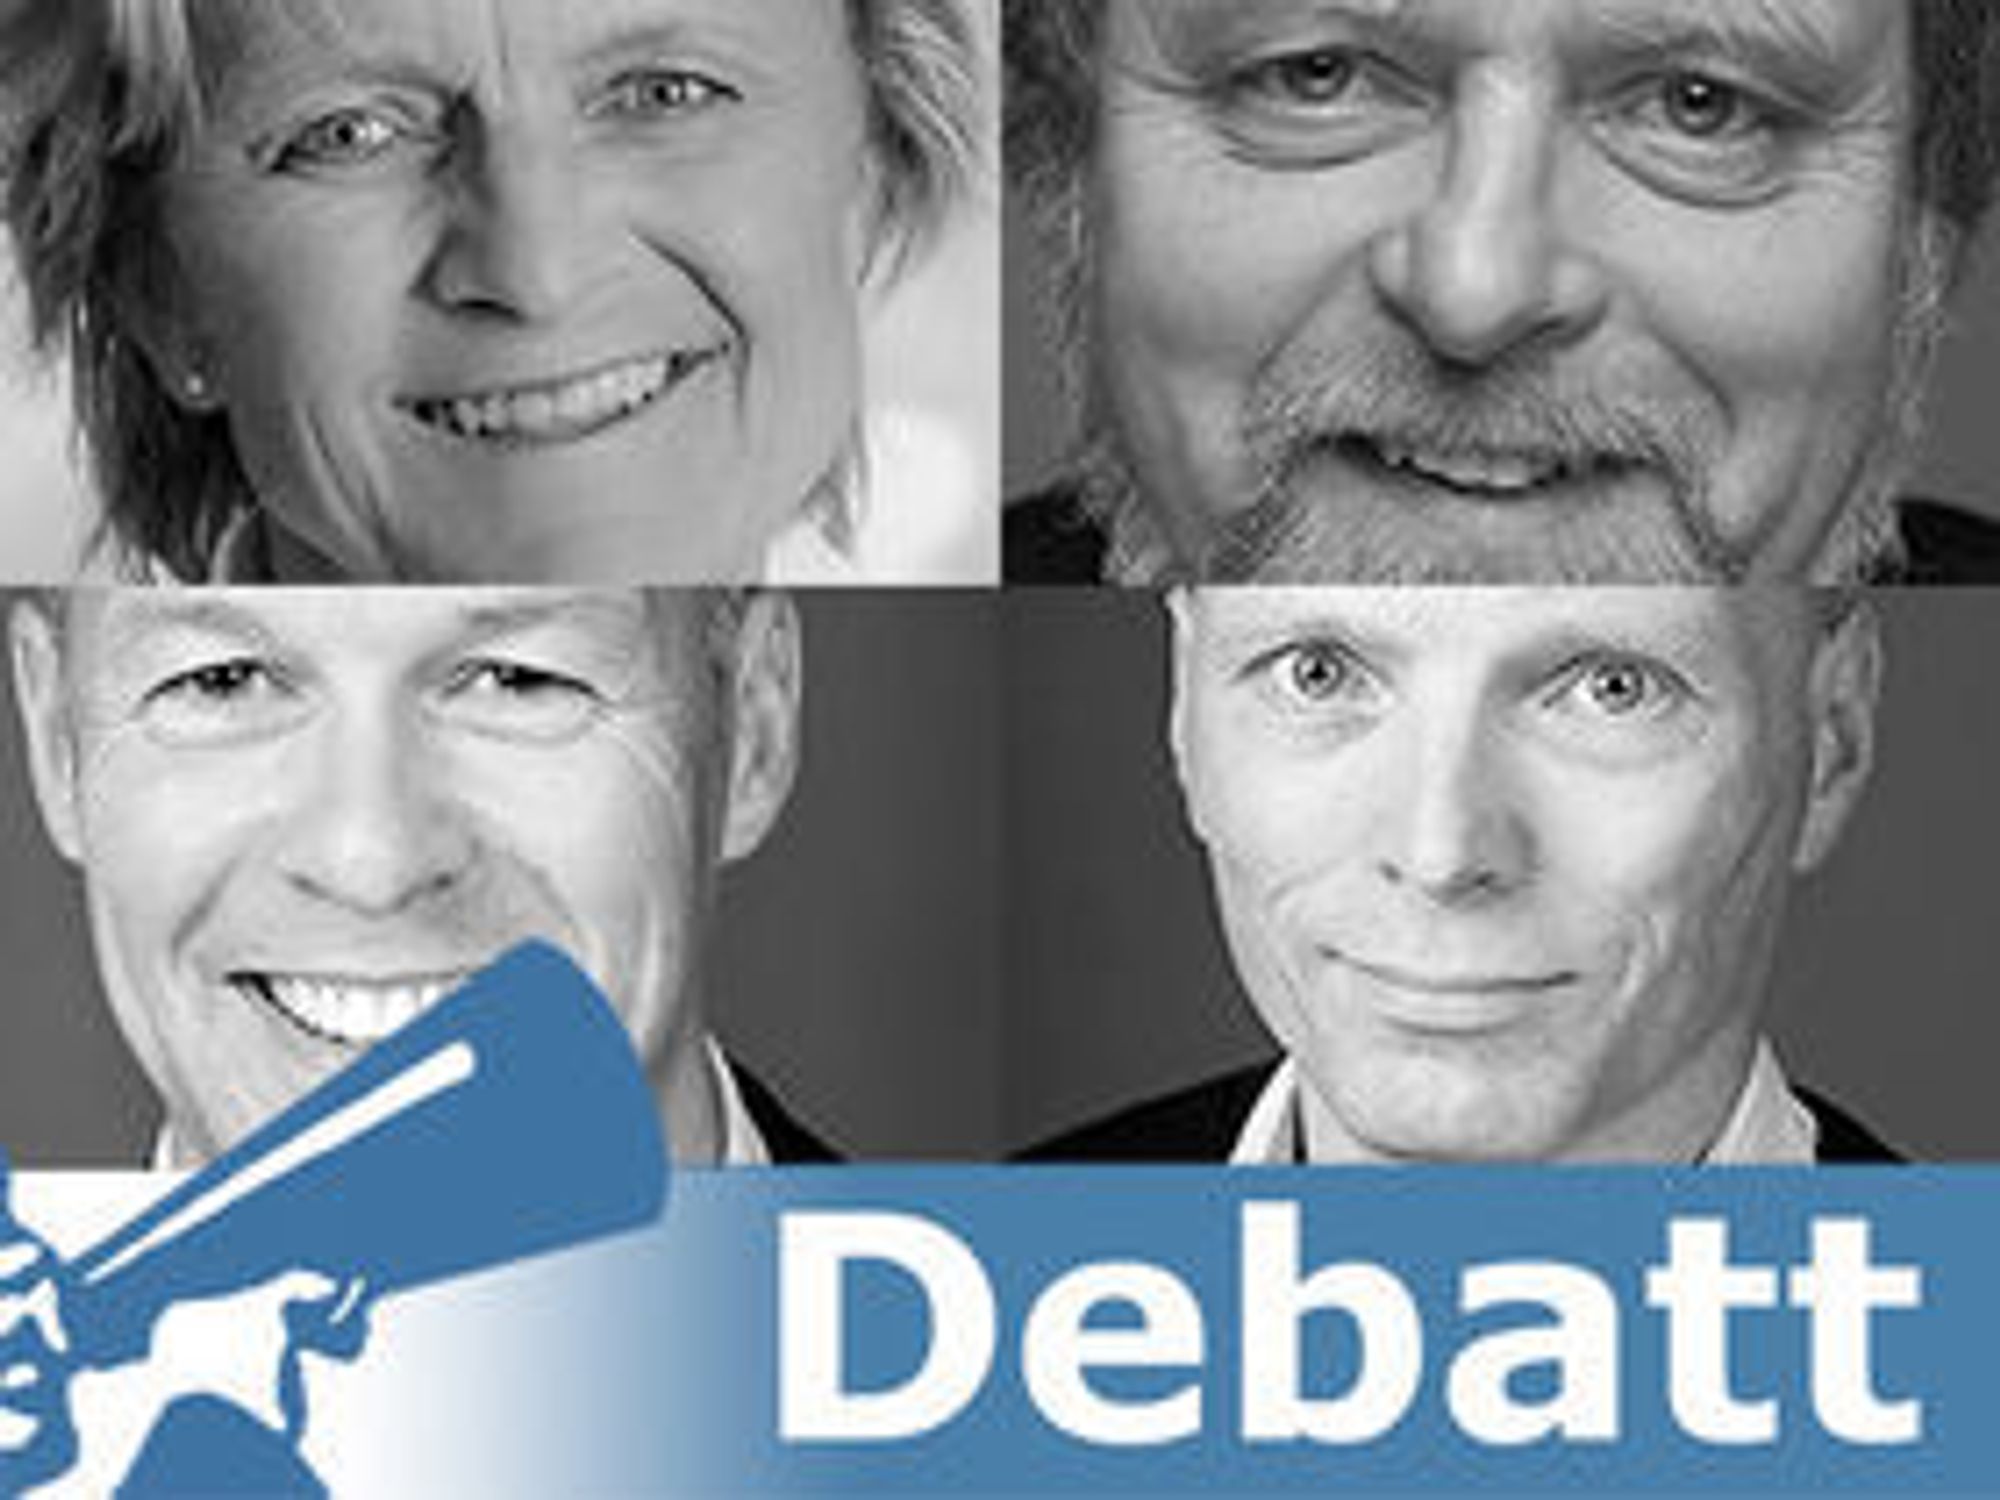 Artikkelforfattere for dette debattinnlegget er Gerd Mejlænder-Larsen (Devoteam), Tov Tovsen, Jan Elling Rindli og Erlend Vestre (Fornebu Consulting).